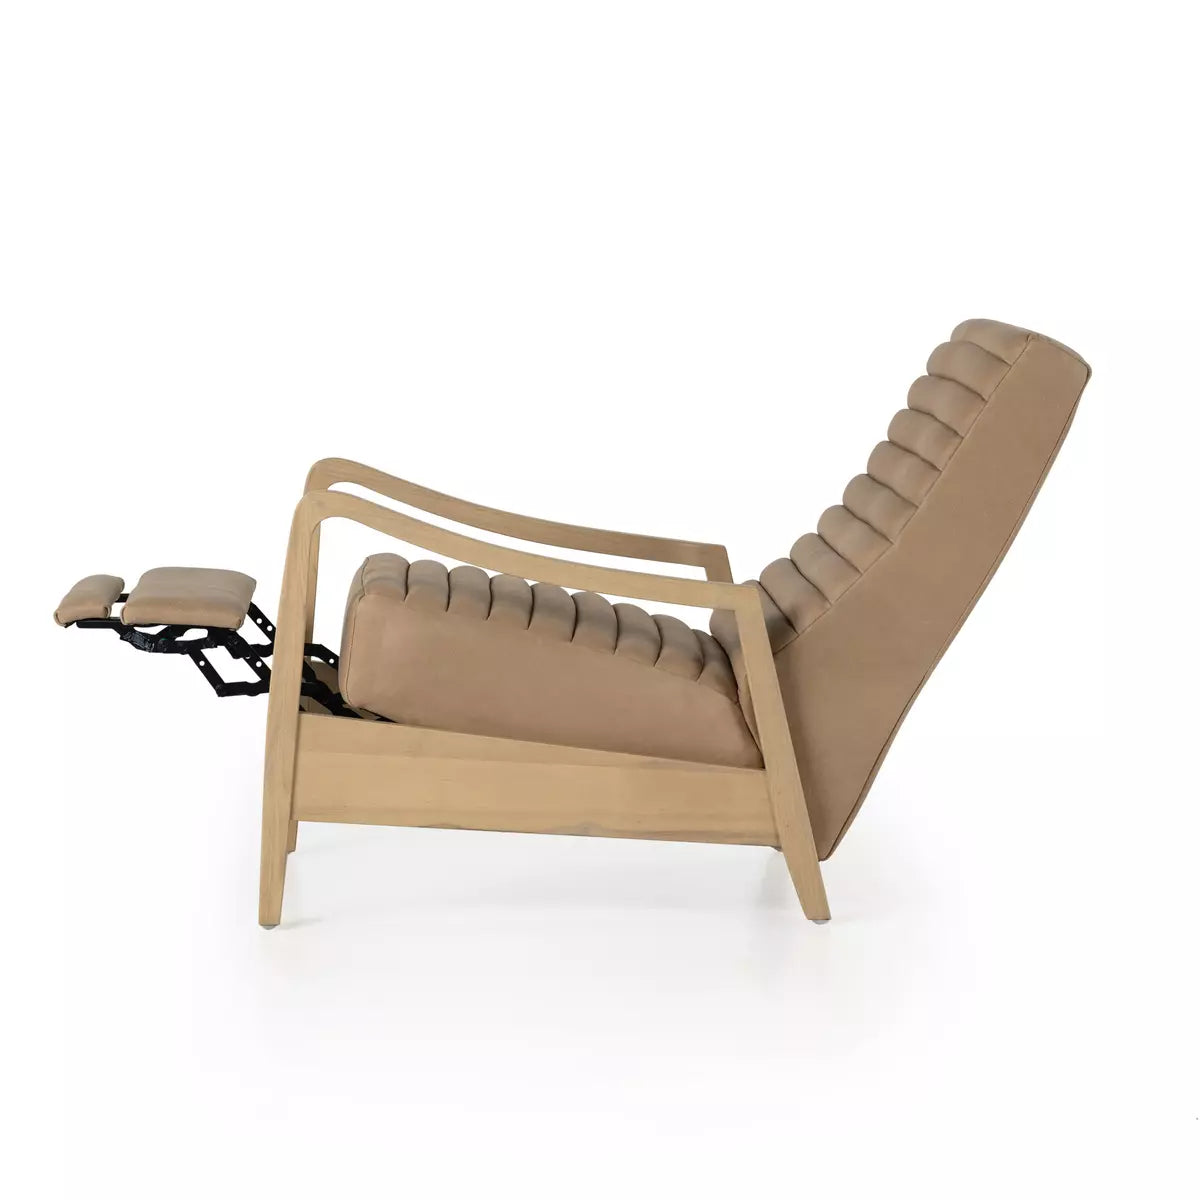 Brighton Chair